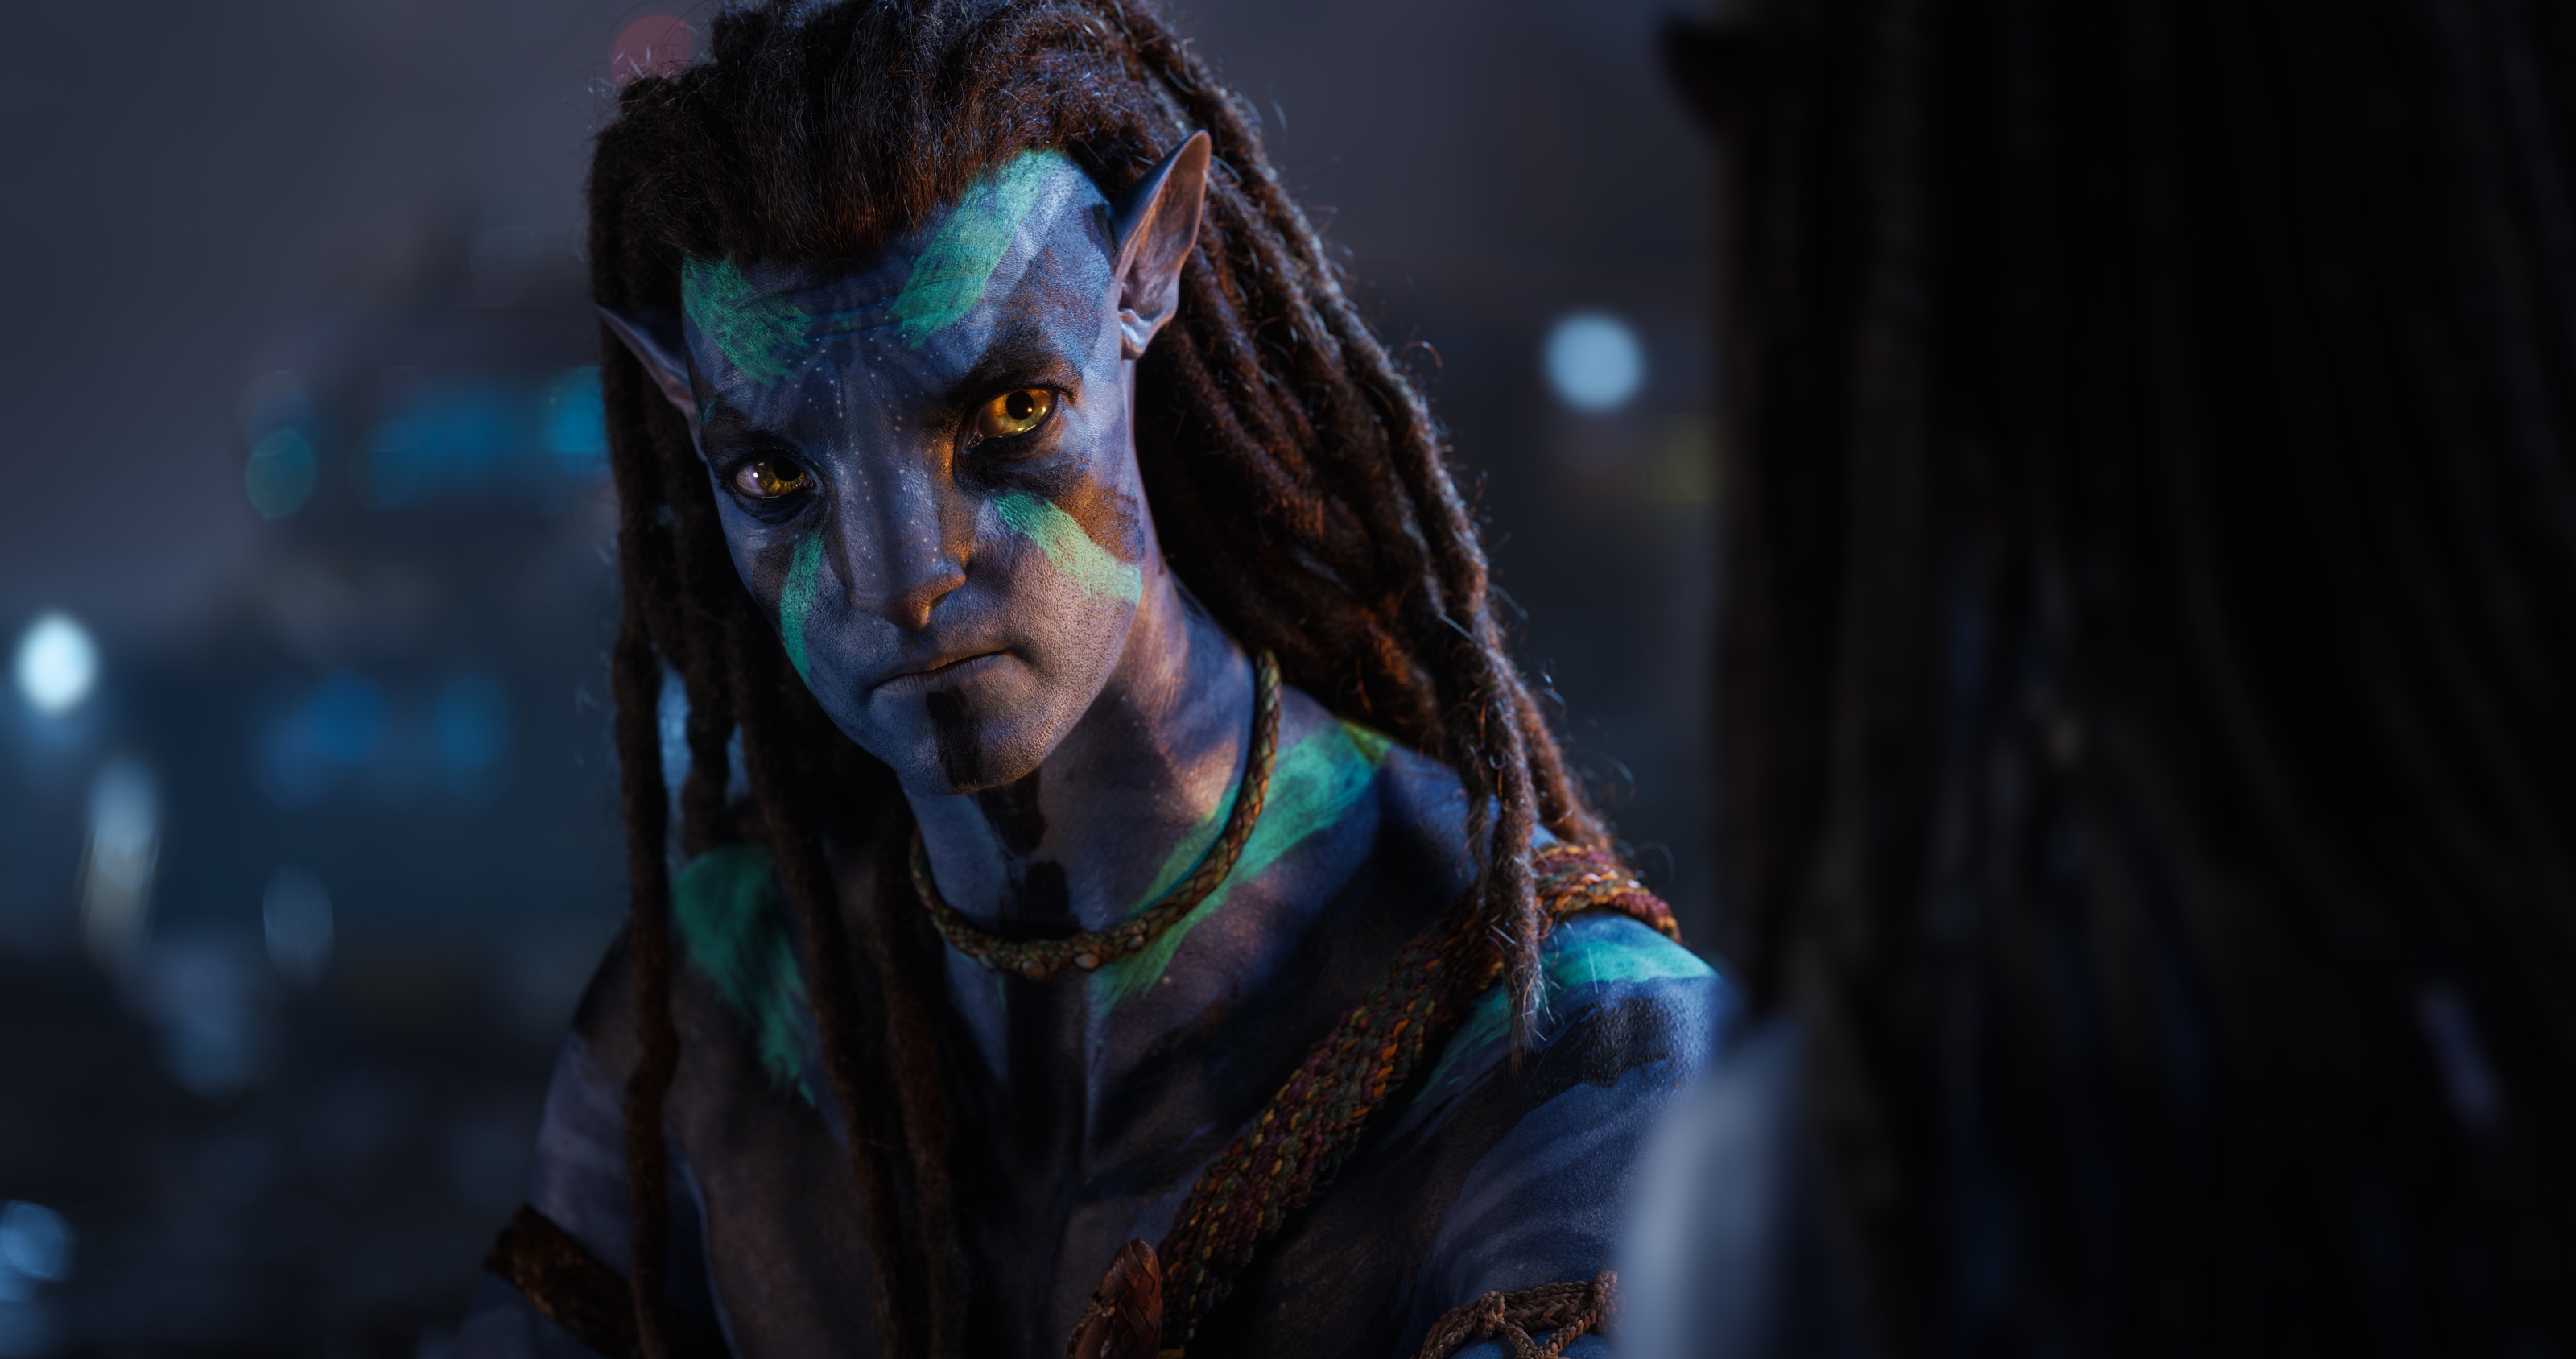 Avatar 2 được dự đoán thu về 135 triệu USD sau 3 ngày mở màn tại Mỹ   VTVVN